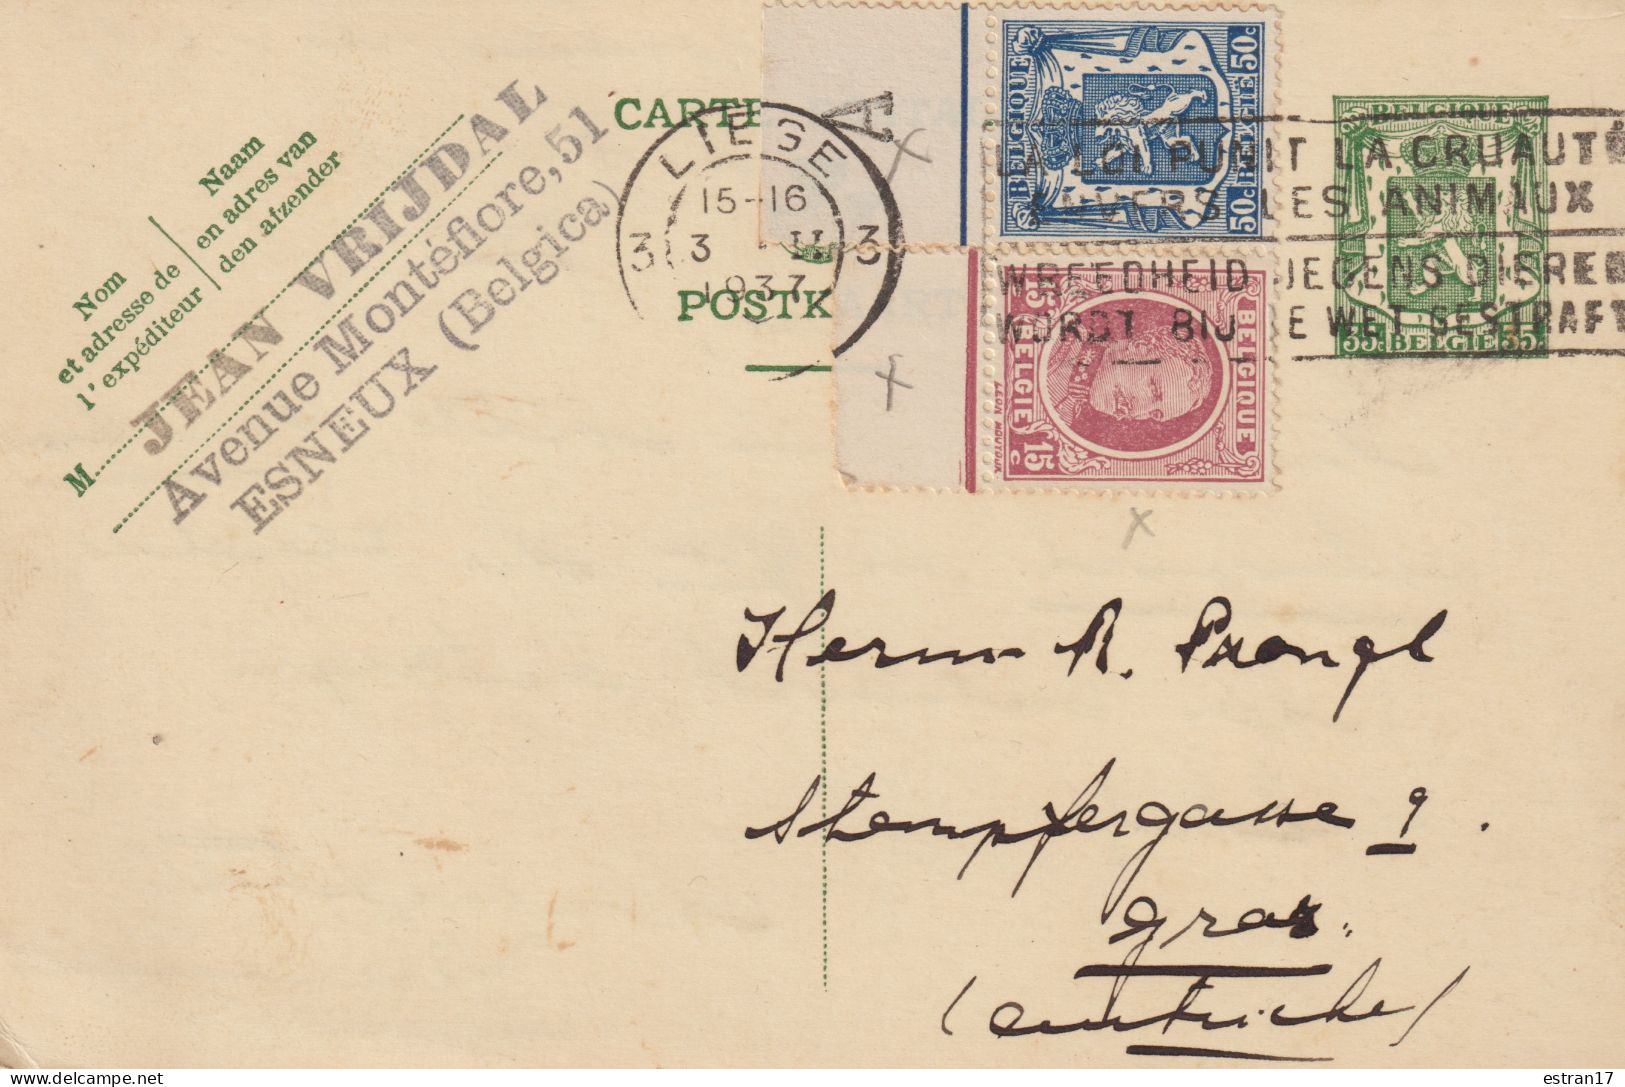 CARTE POSTALE PUBLICITAIRE AVEC ENTIER POSTAL ET DEUX TIMBRES OBLITERATION LIEGE 1937 - Postkarten 1934-1951